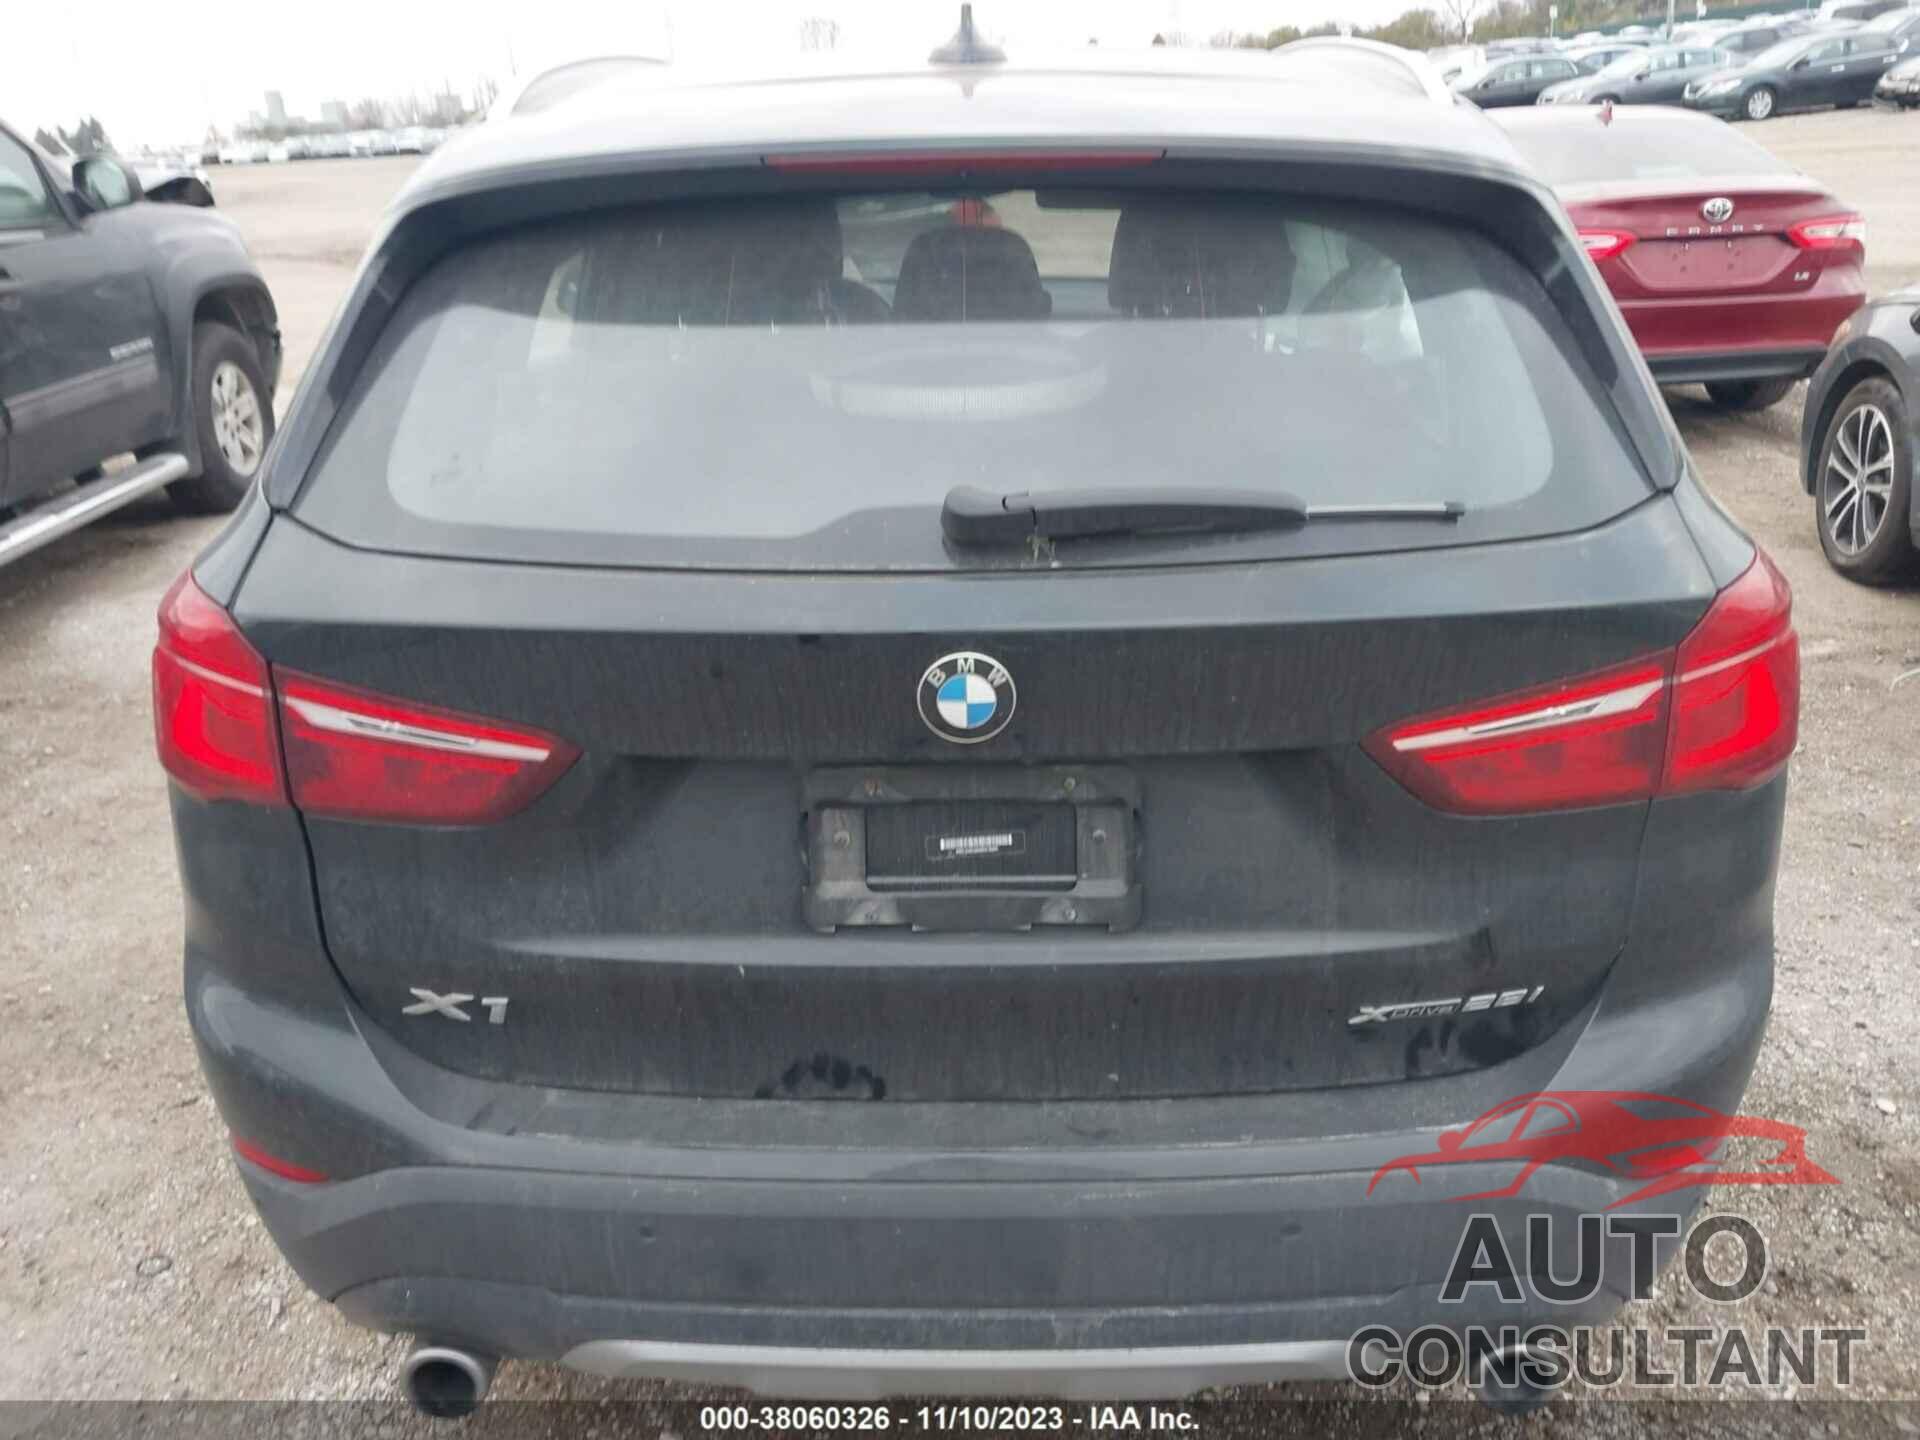 BMW X1 2021 - WBXJG9C06M5S16561